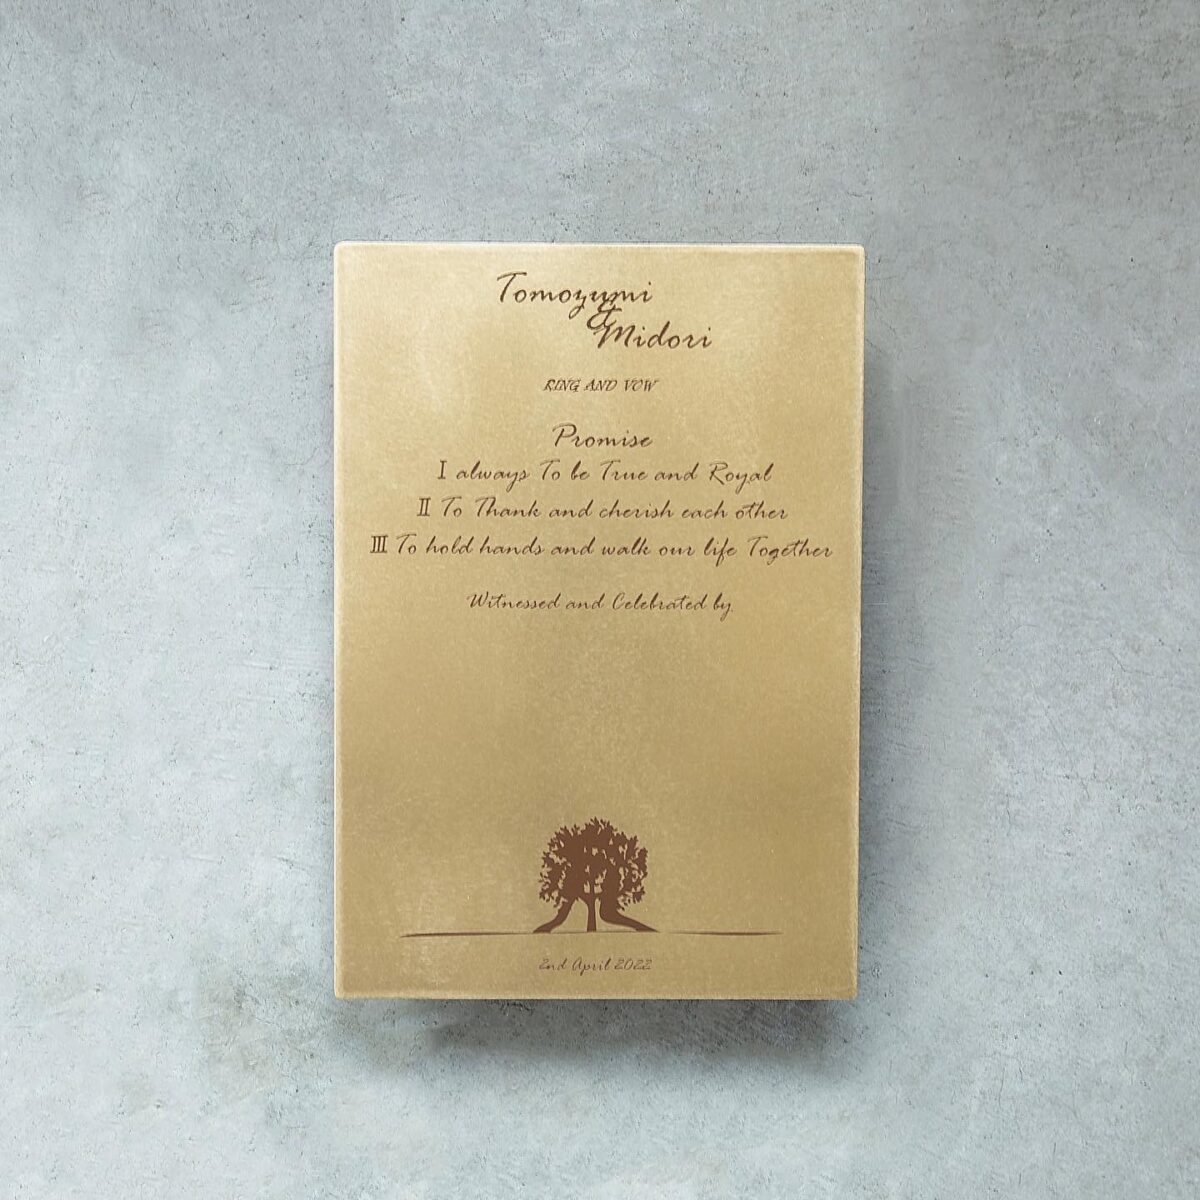 真鍮結婚証明書 結婚証明書 打刻印 真鍮 刻印 セット - ウェディング